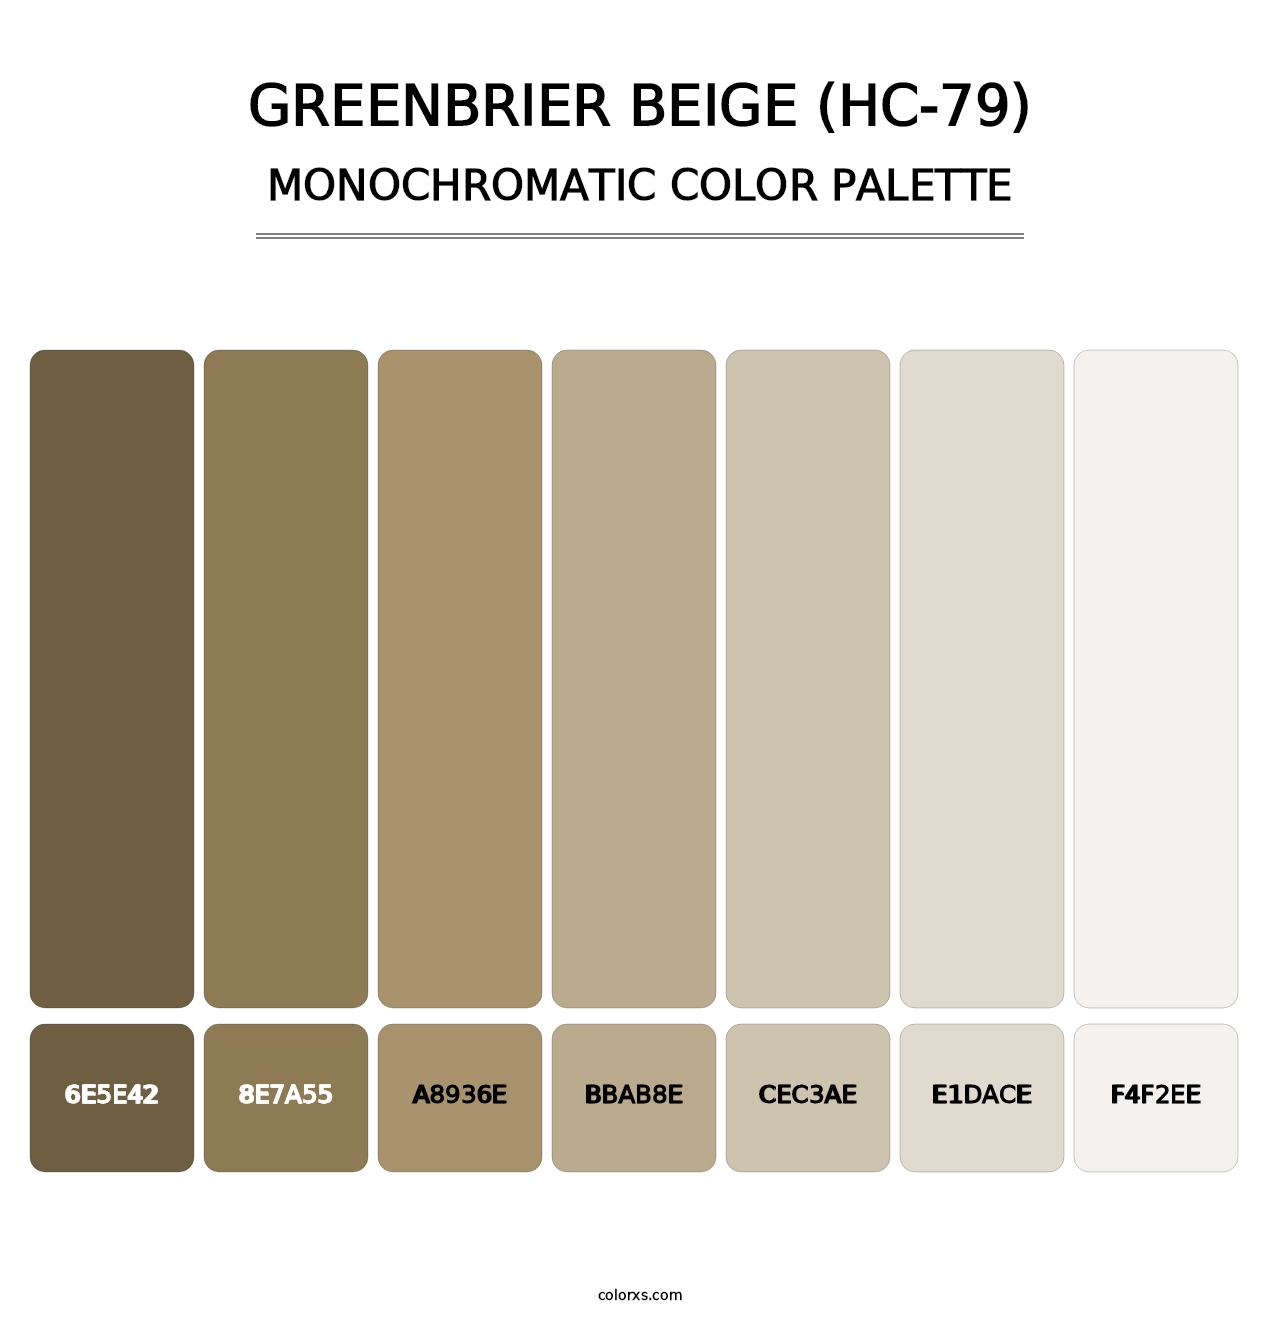 Greenbrier Beige (HC-79) - Monochromatic Color Palette